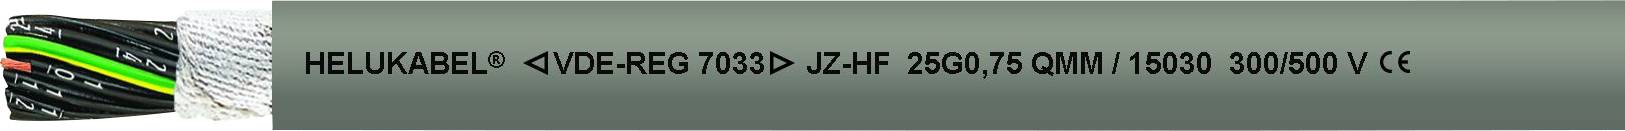 HELUKABEL 15146-1000 Schleppkettenleitung JZ-HF 5 G 6.00 mm² Grau 1000 m